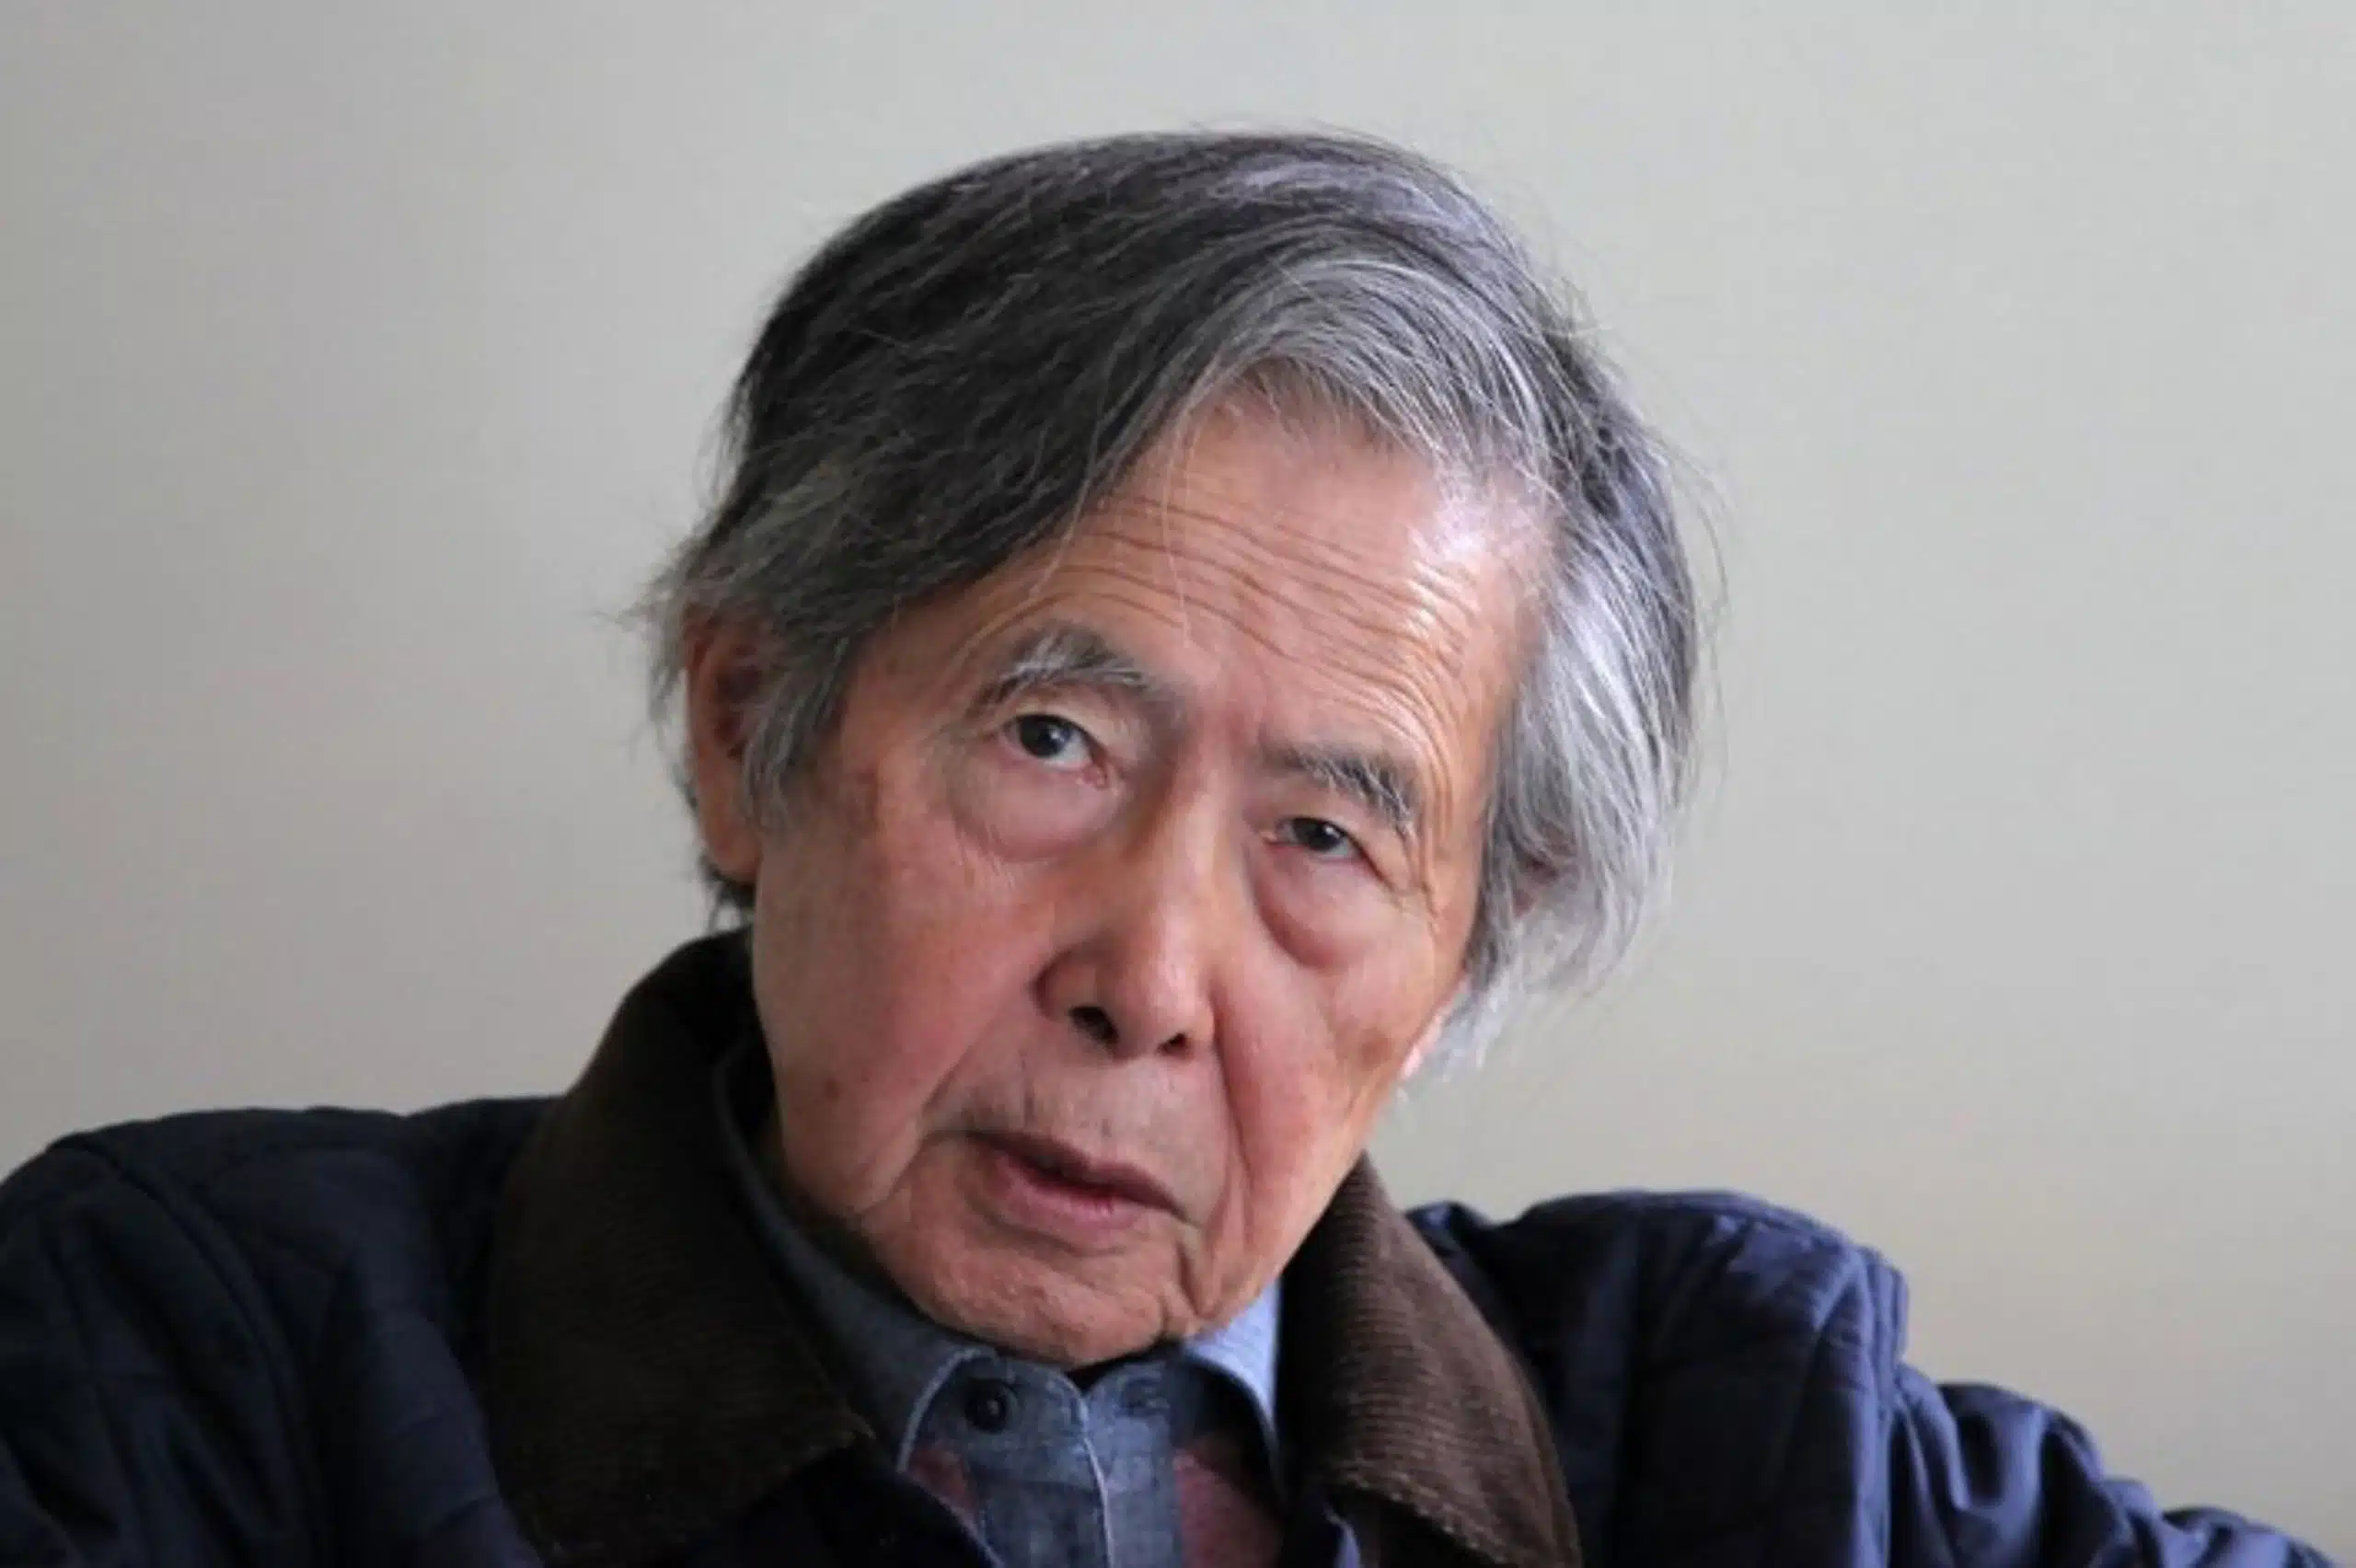 Alberto Fujimori ingresa a cuidados intensivos tras sufrir caída